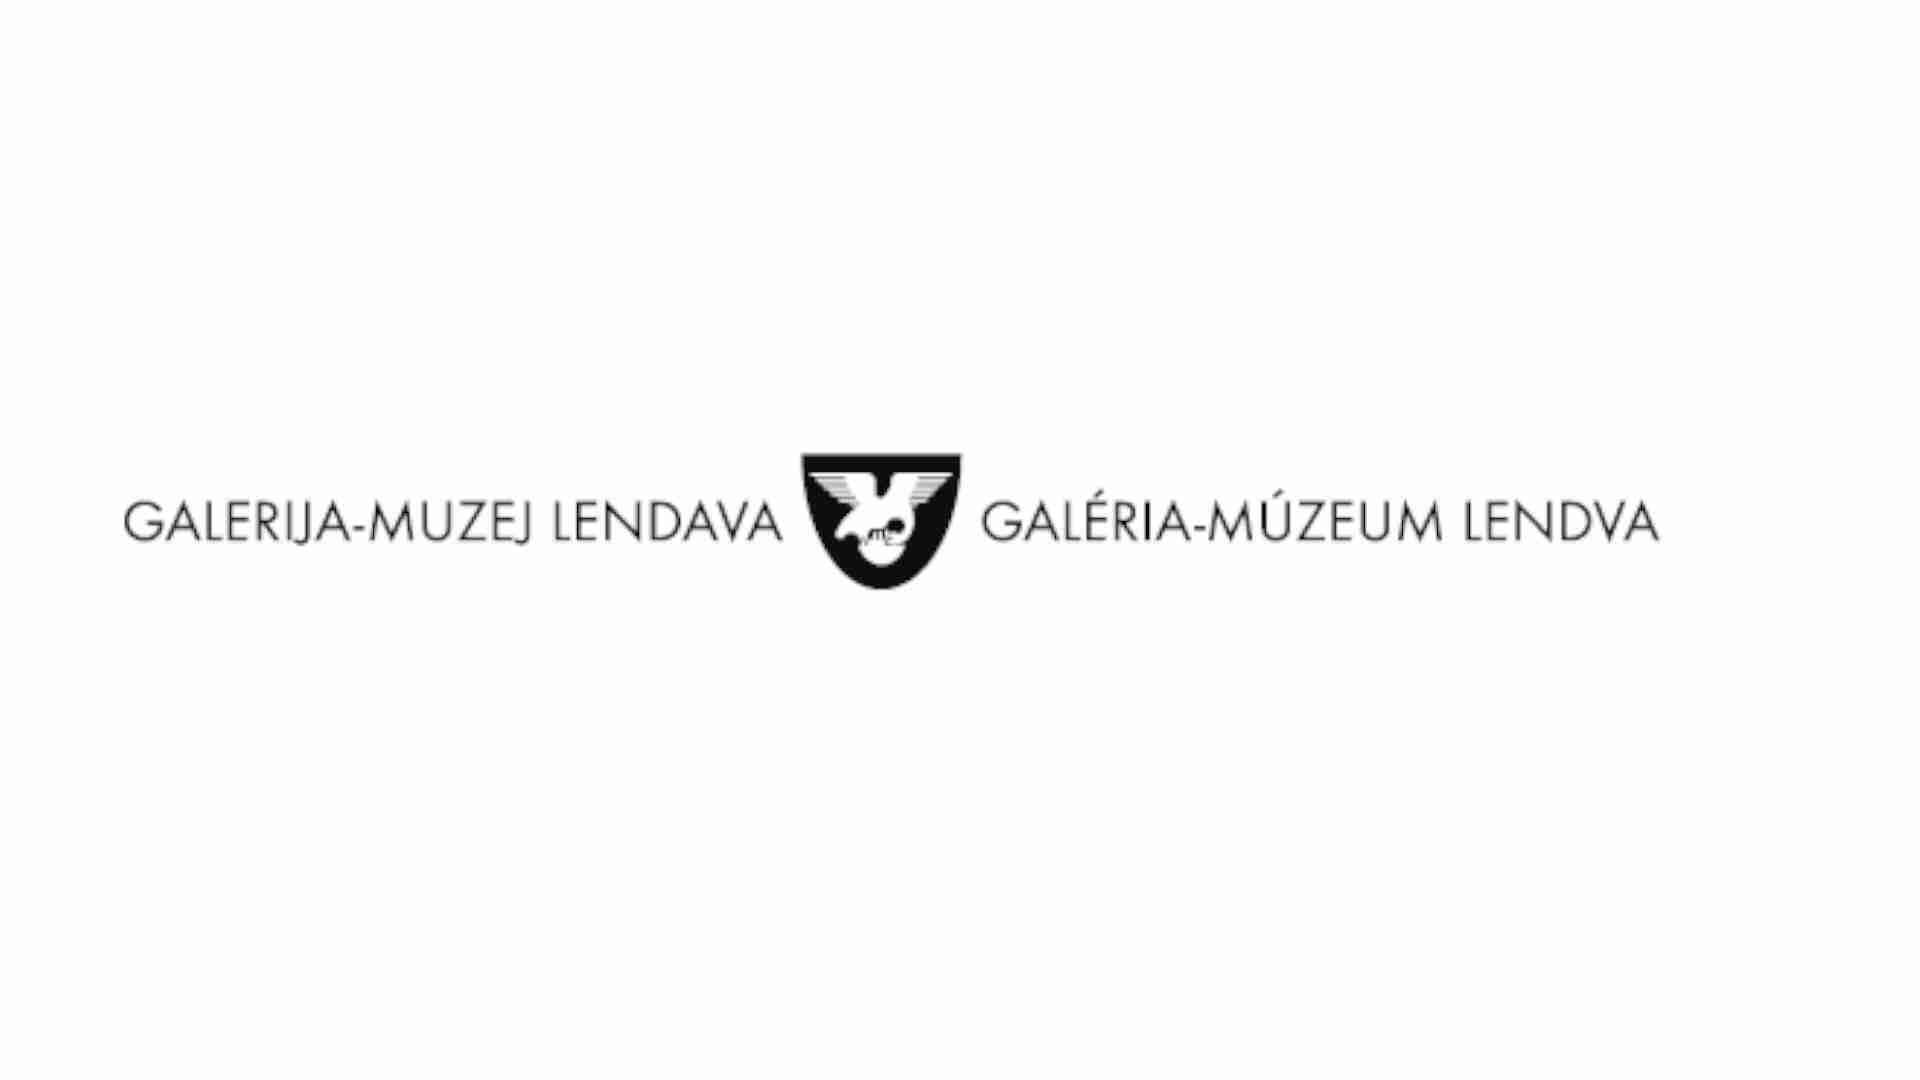 Galerija-muzej Lendava